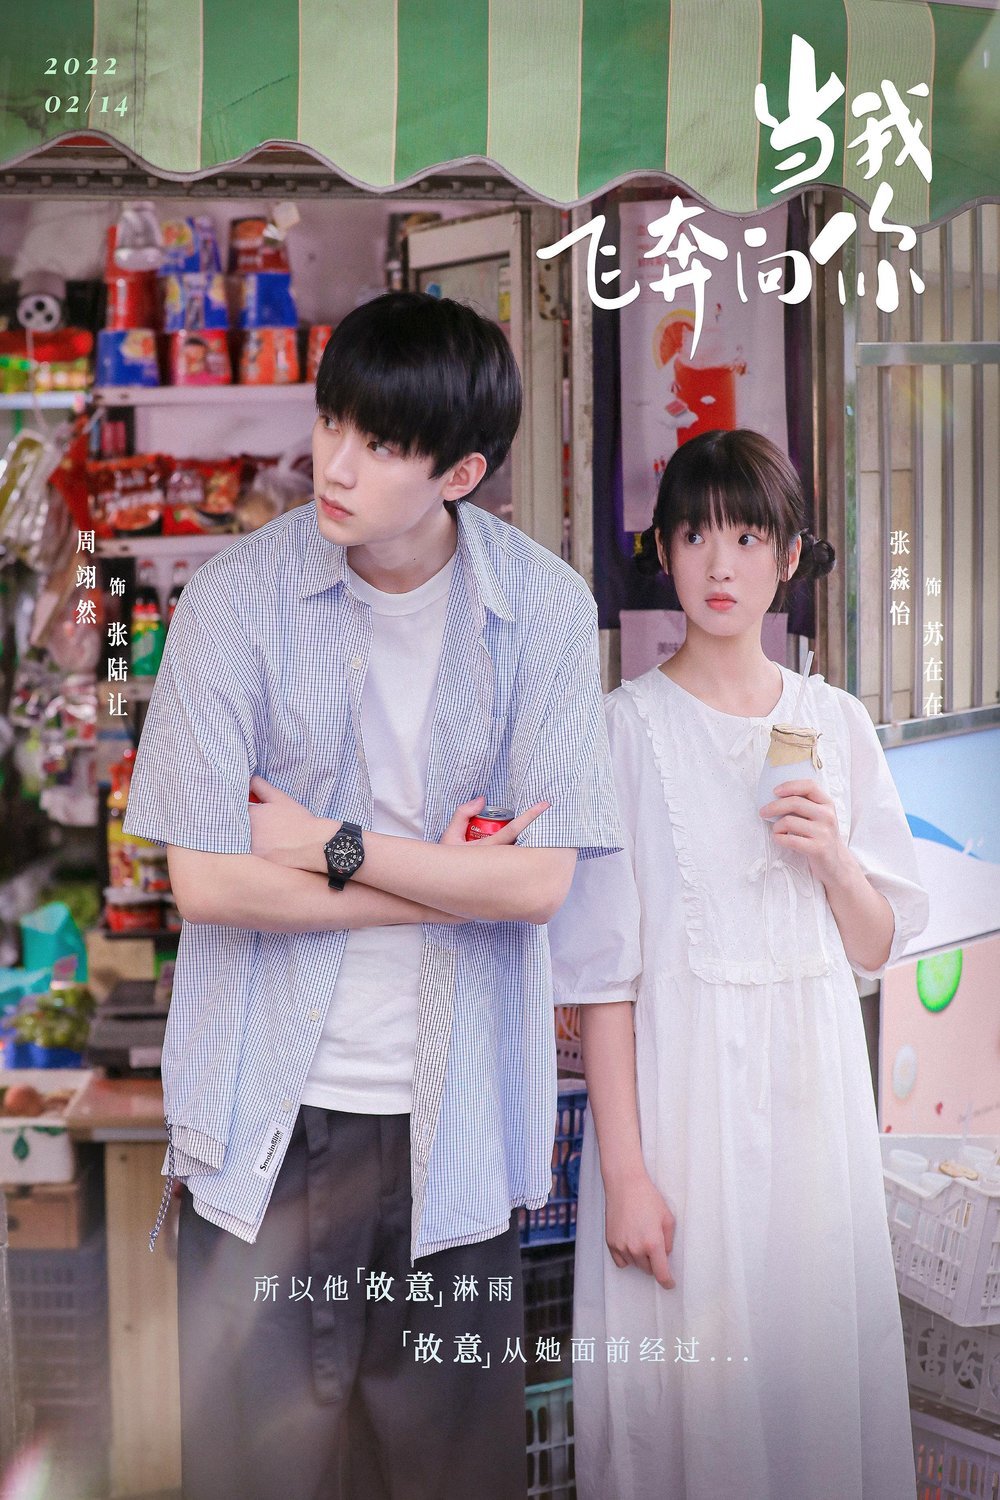 Mandarin poster of the movie Dang wo fei ben xiang ni